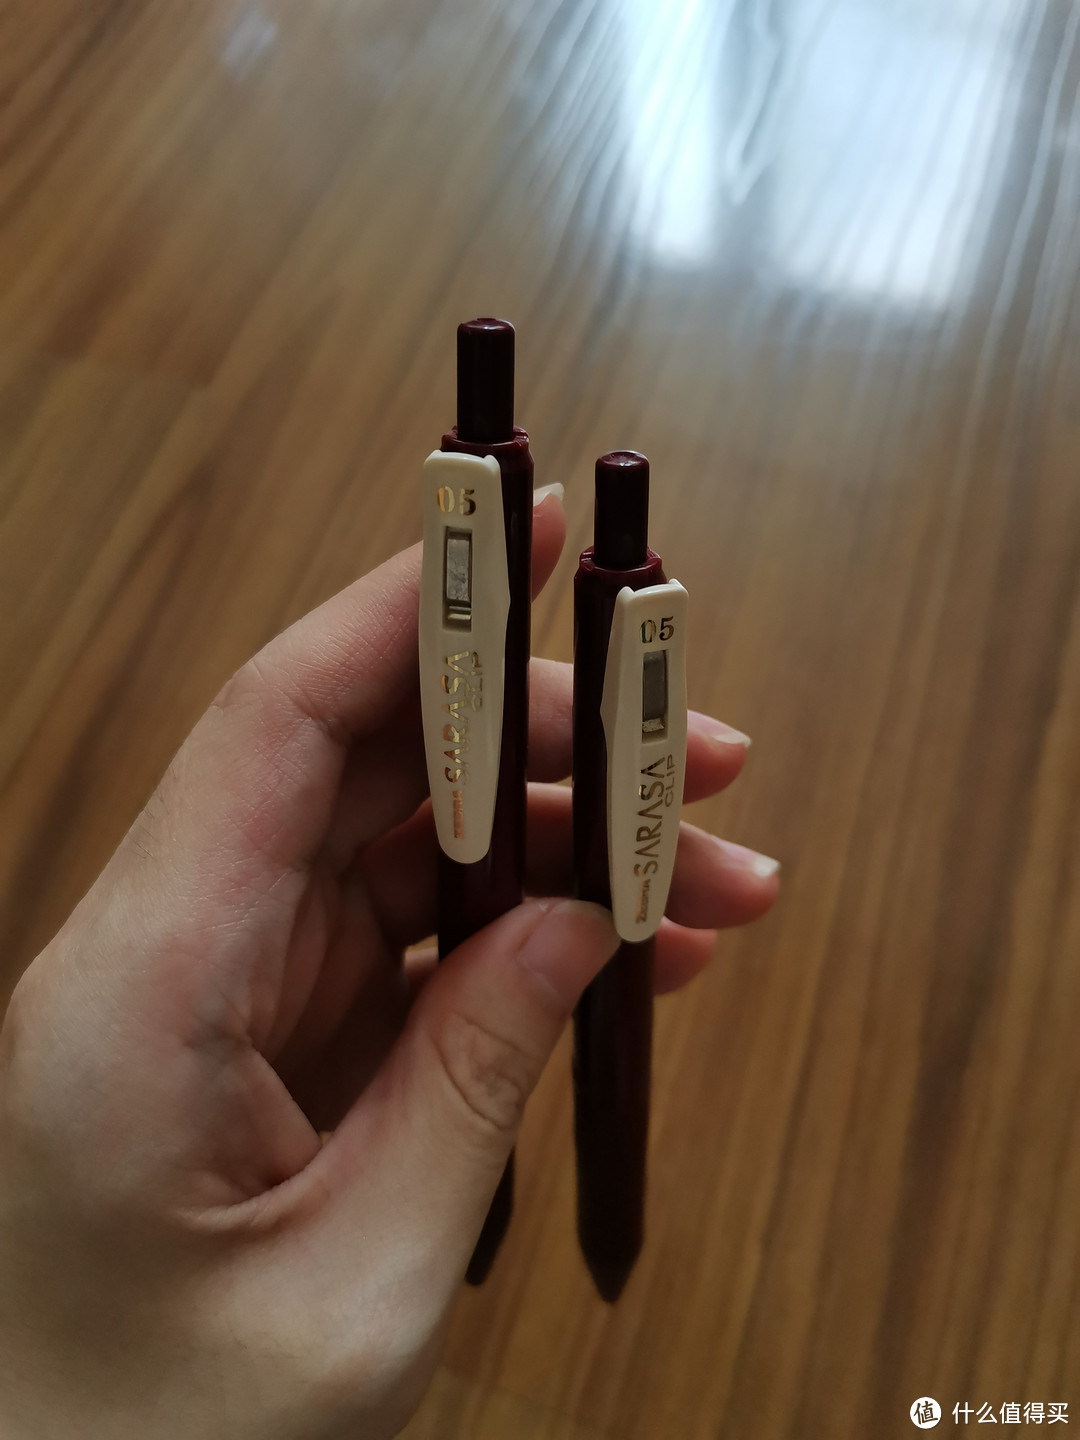 【超好用的文具测评】日本ZEBRA斑马中性笔JJ15复古笔